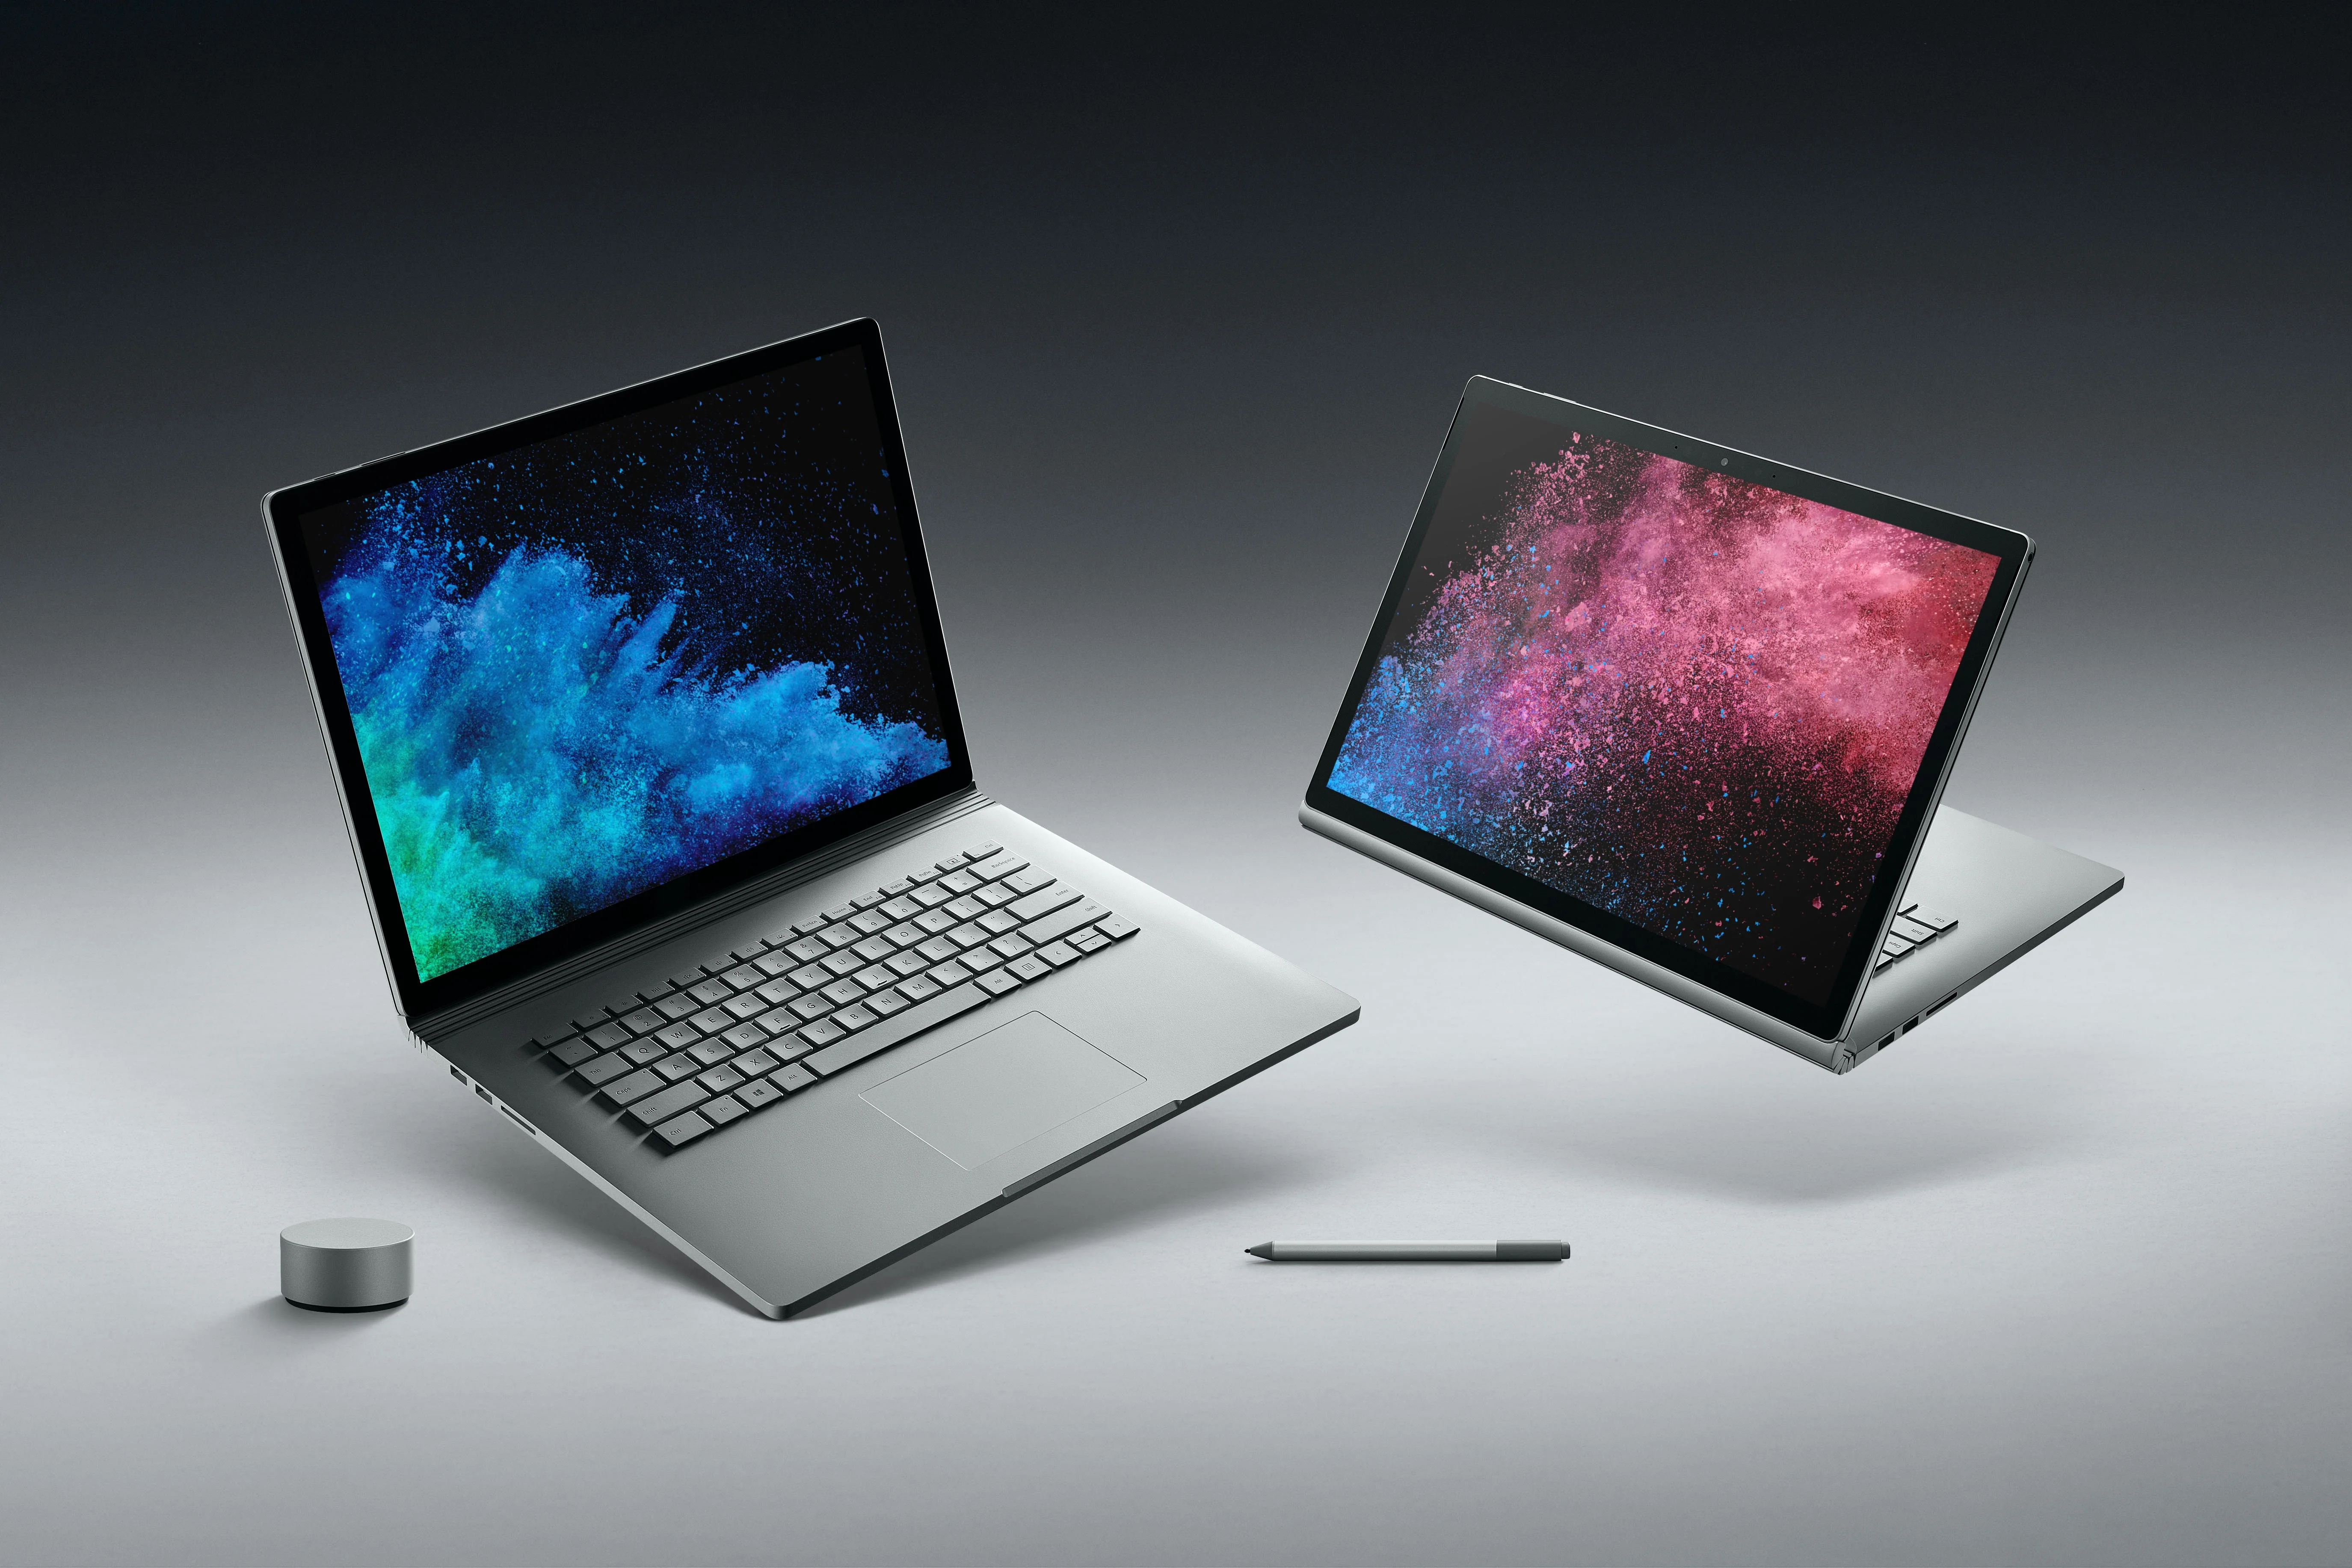 Microsoft представила стильные и мощные ультрабуки 2в1 Surface Book 2 - фото 1